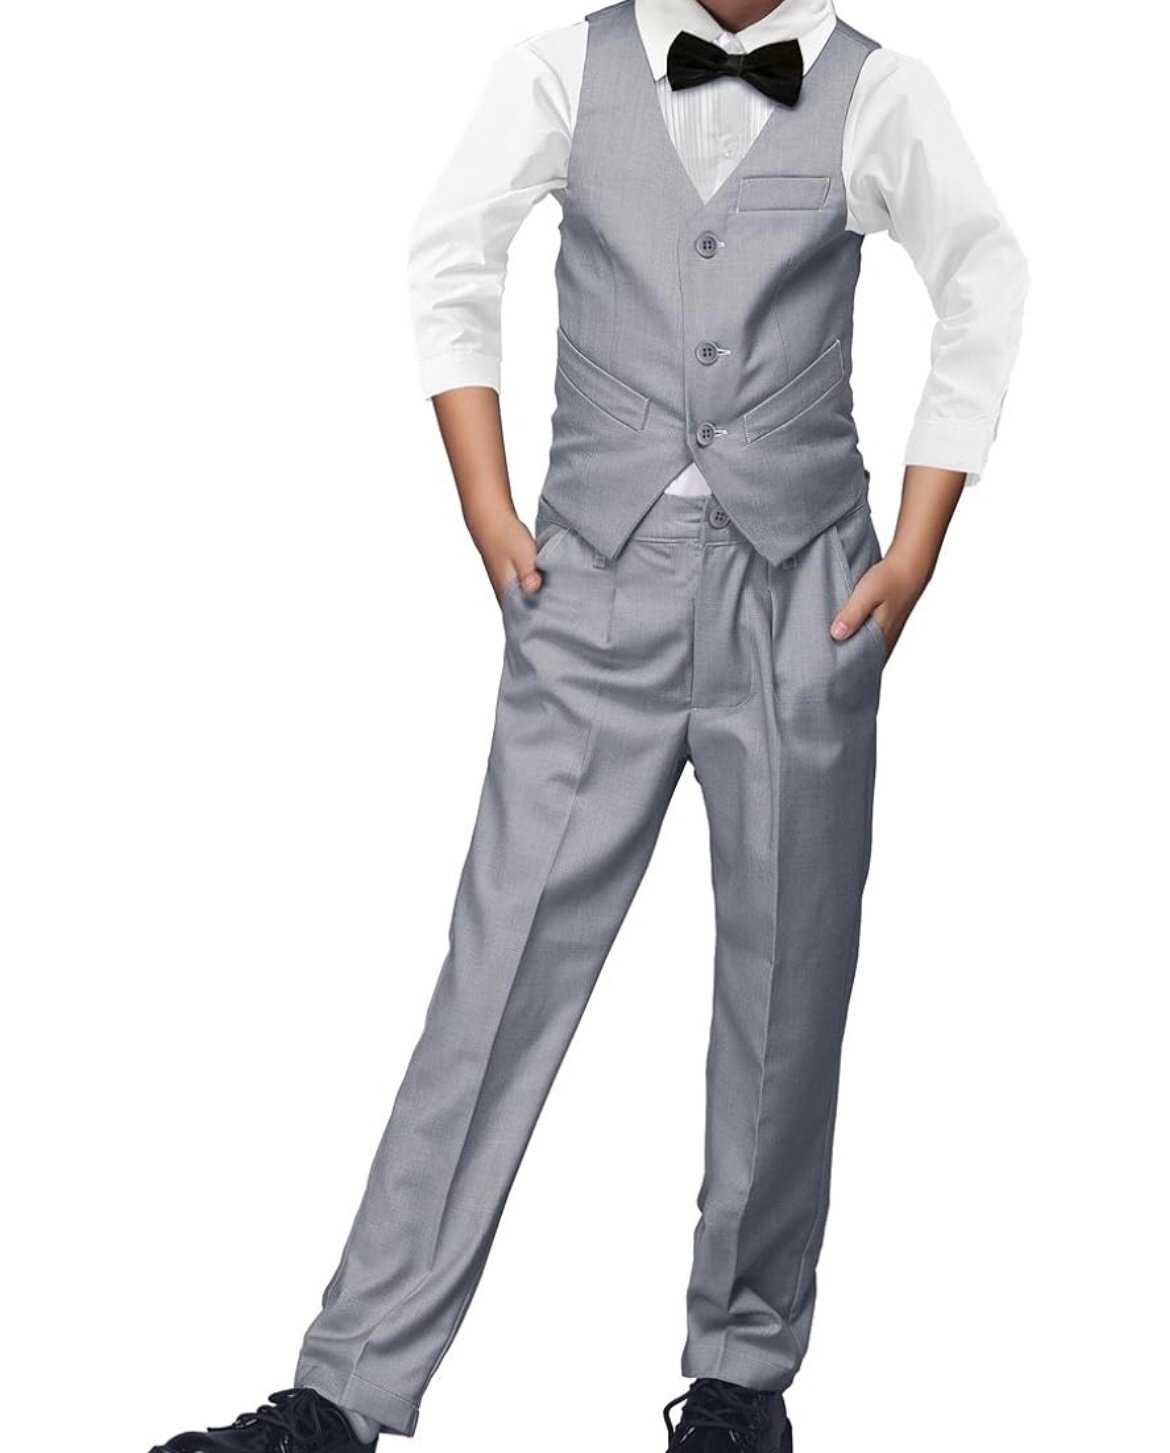 Boys Formal Suit set 5 piece slim fit A03clsYqV